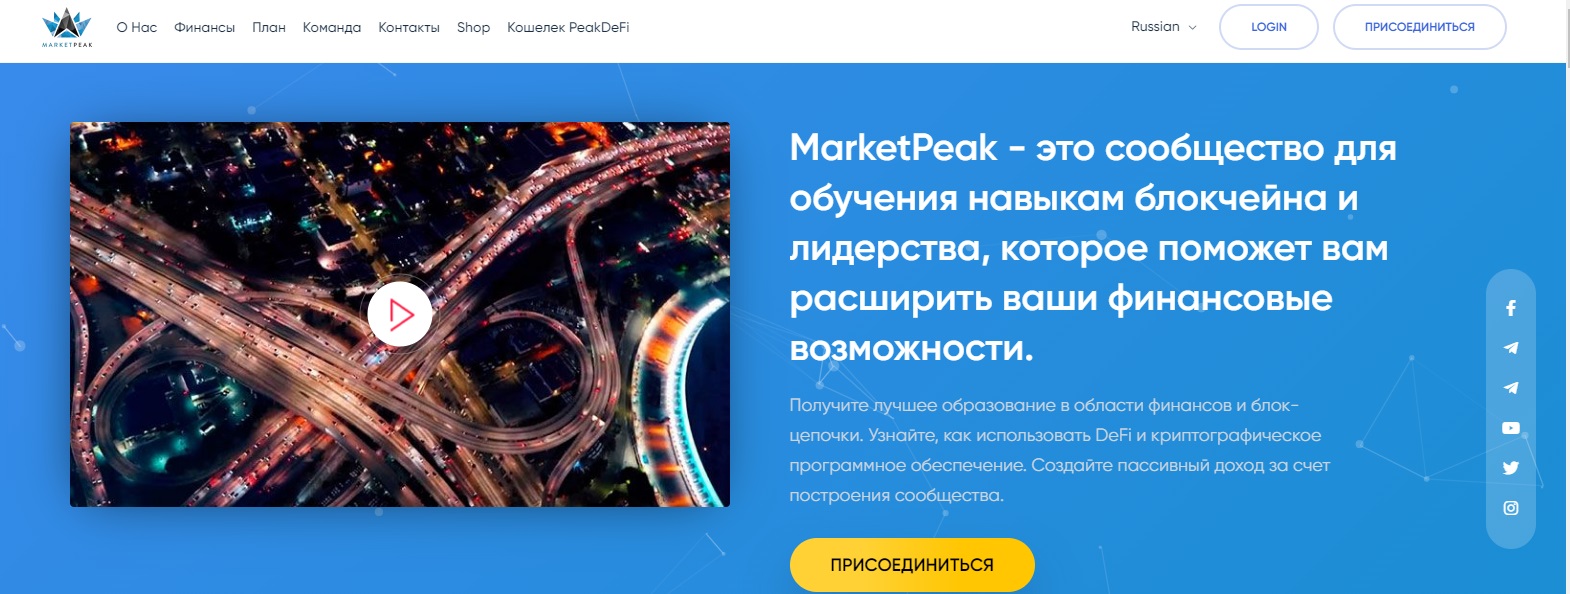 MarketPeak